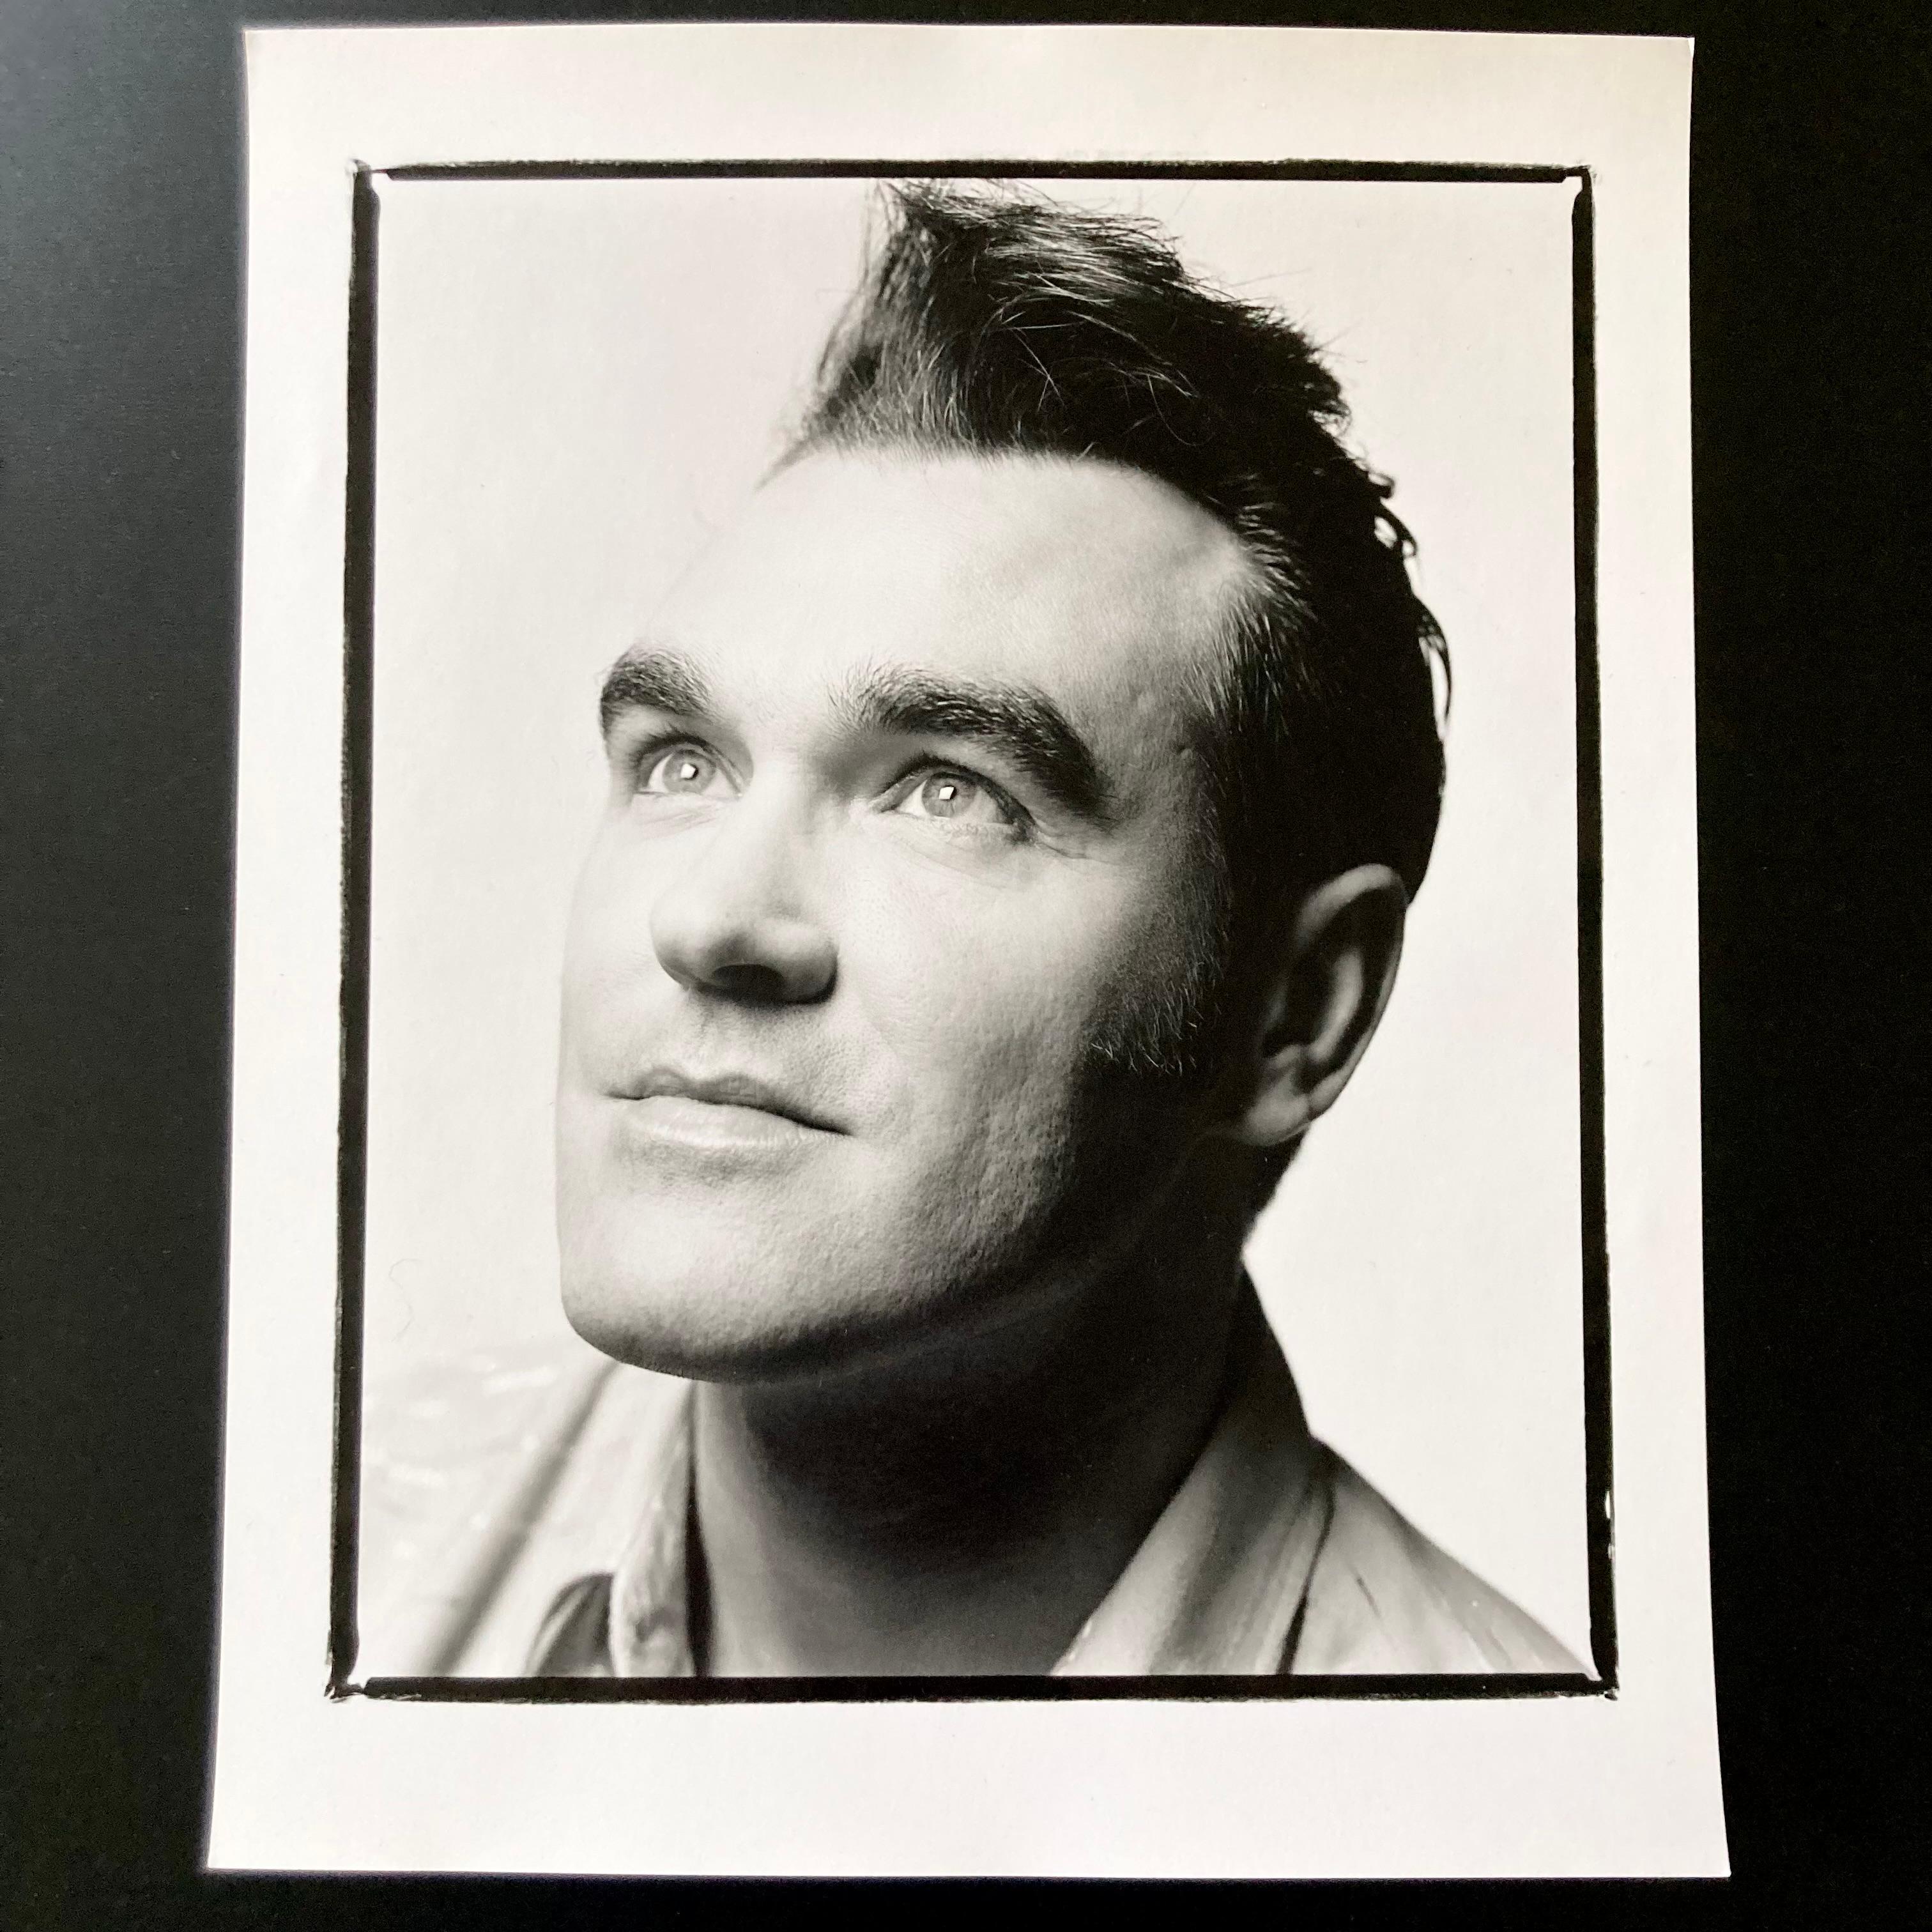 Morrissey, 8 "x10" Handbedruckter Dunkelkammerabzug, der zum Zeitpunkt der Aufnahme 1994 erstellt und flach in einer temperaturgeregelten Umgebung gelagert wurde.

Der Druck ist in einwandfreiem, neuem Zustand ohne Mängel. Auf der Rückseite mit